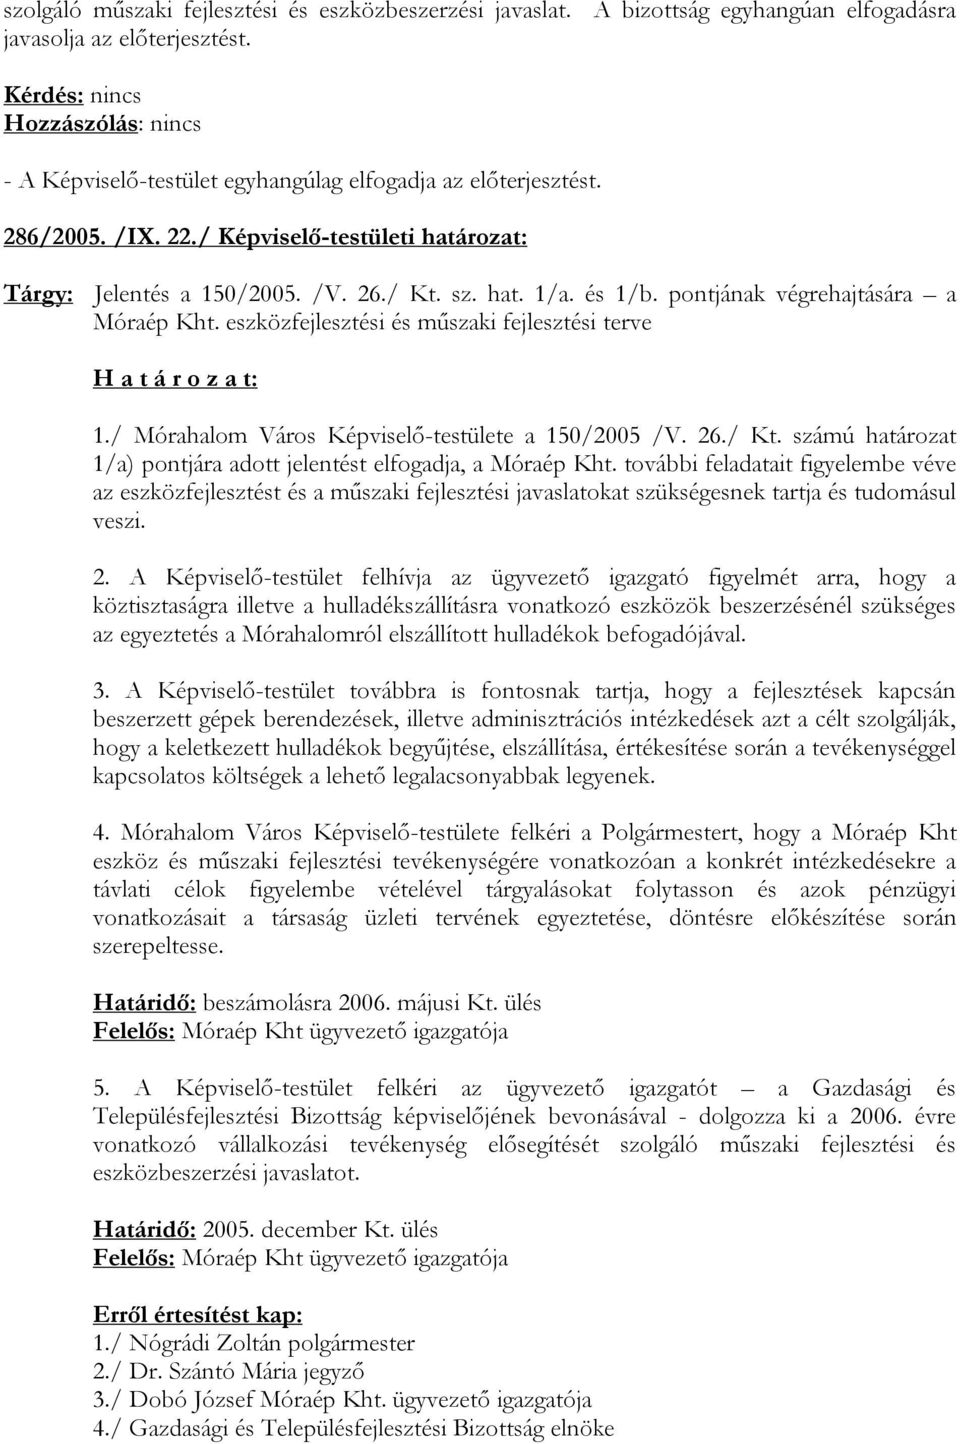 / Mórahalom Város Képviselő-testülete a 150/2005 /V. 26./ Kt. számú határozat 1/a) pontjára adott jelentést elfogadja, a Móraép Kht.